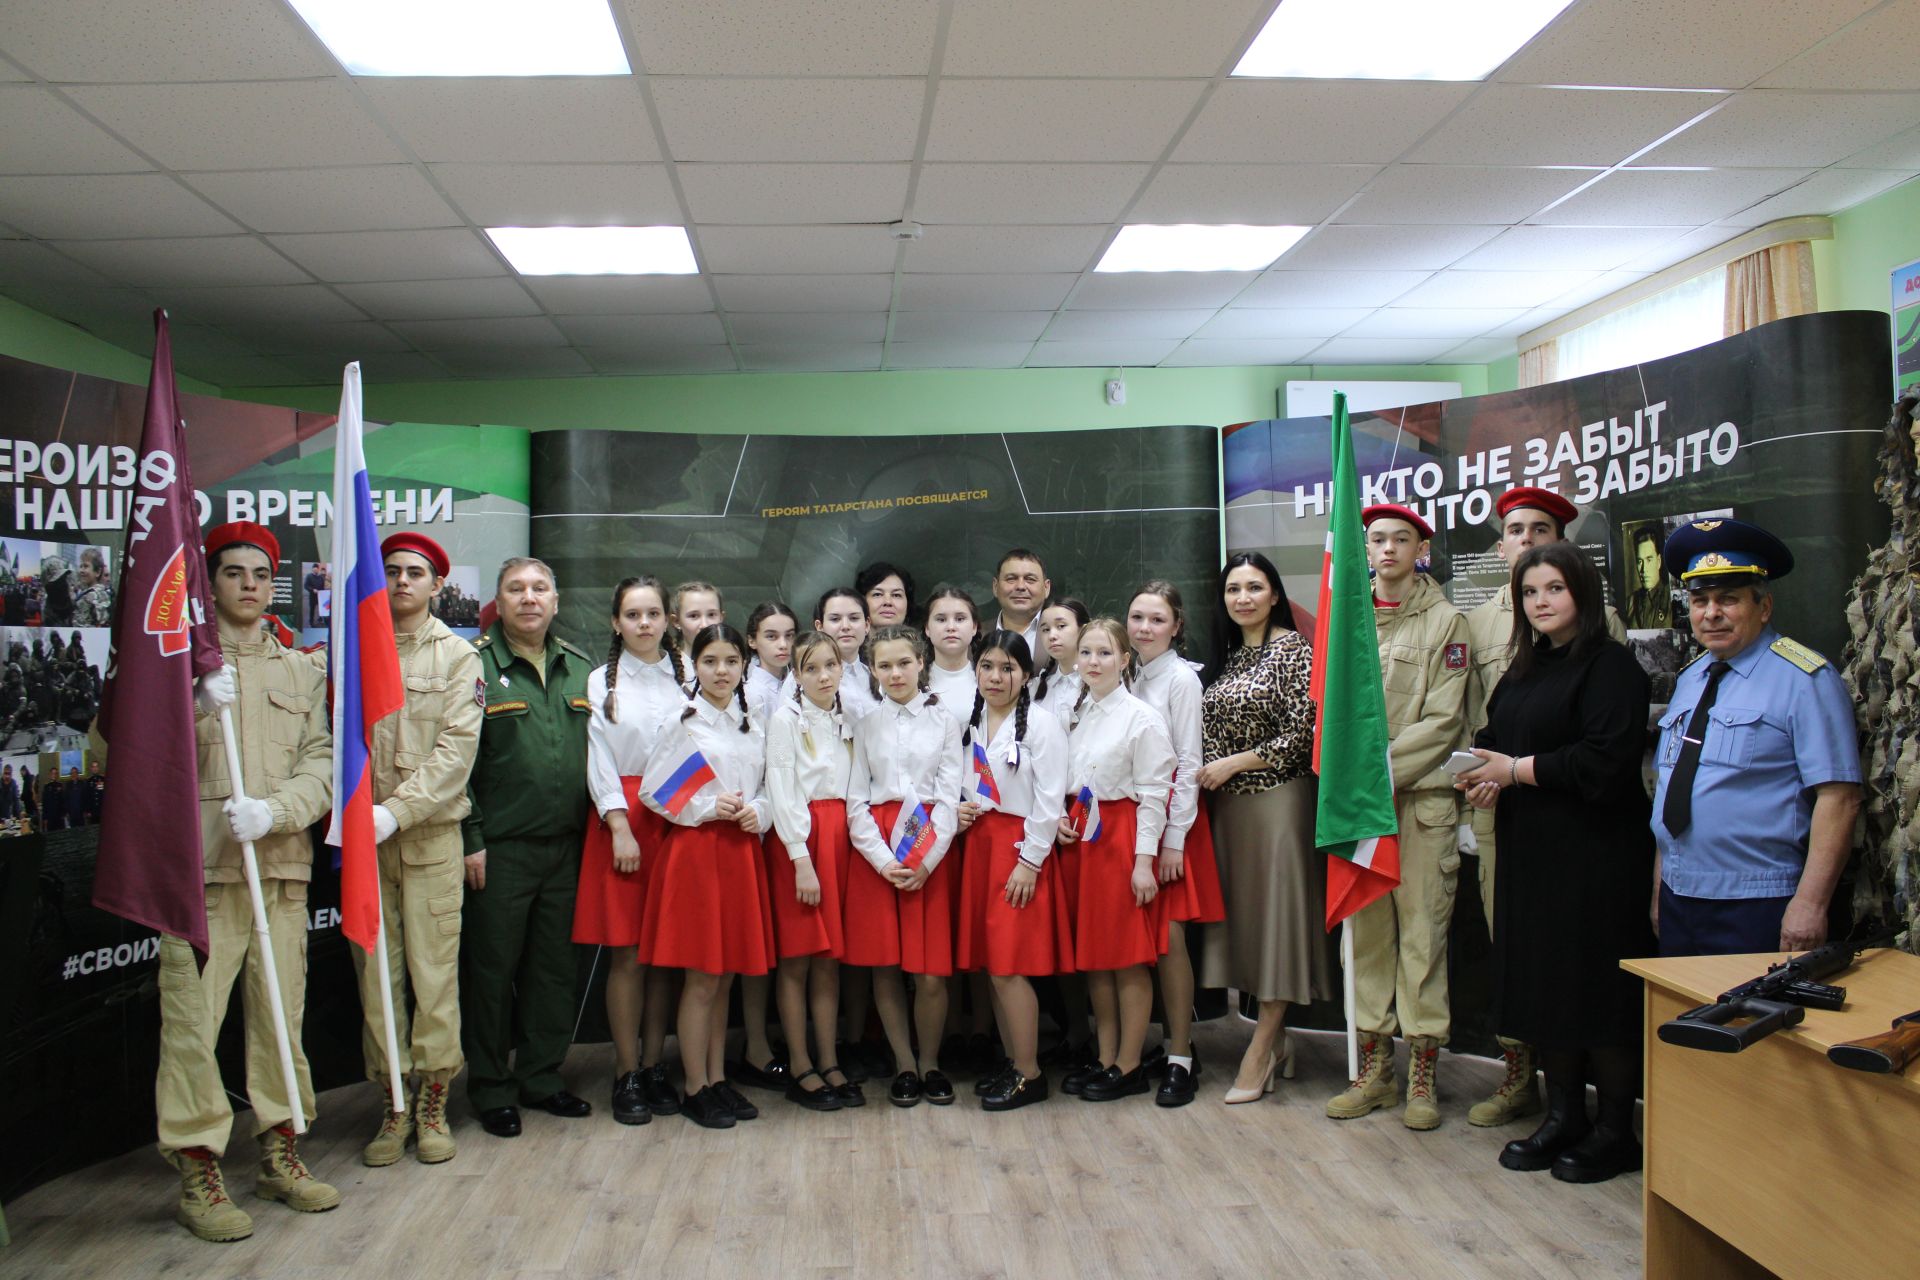 В Азнакаево состоялось открытие передвижной выставки, посвященной участникам СВО